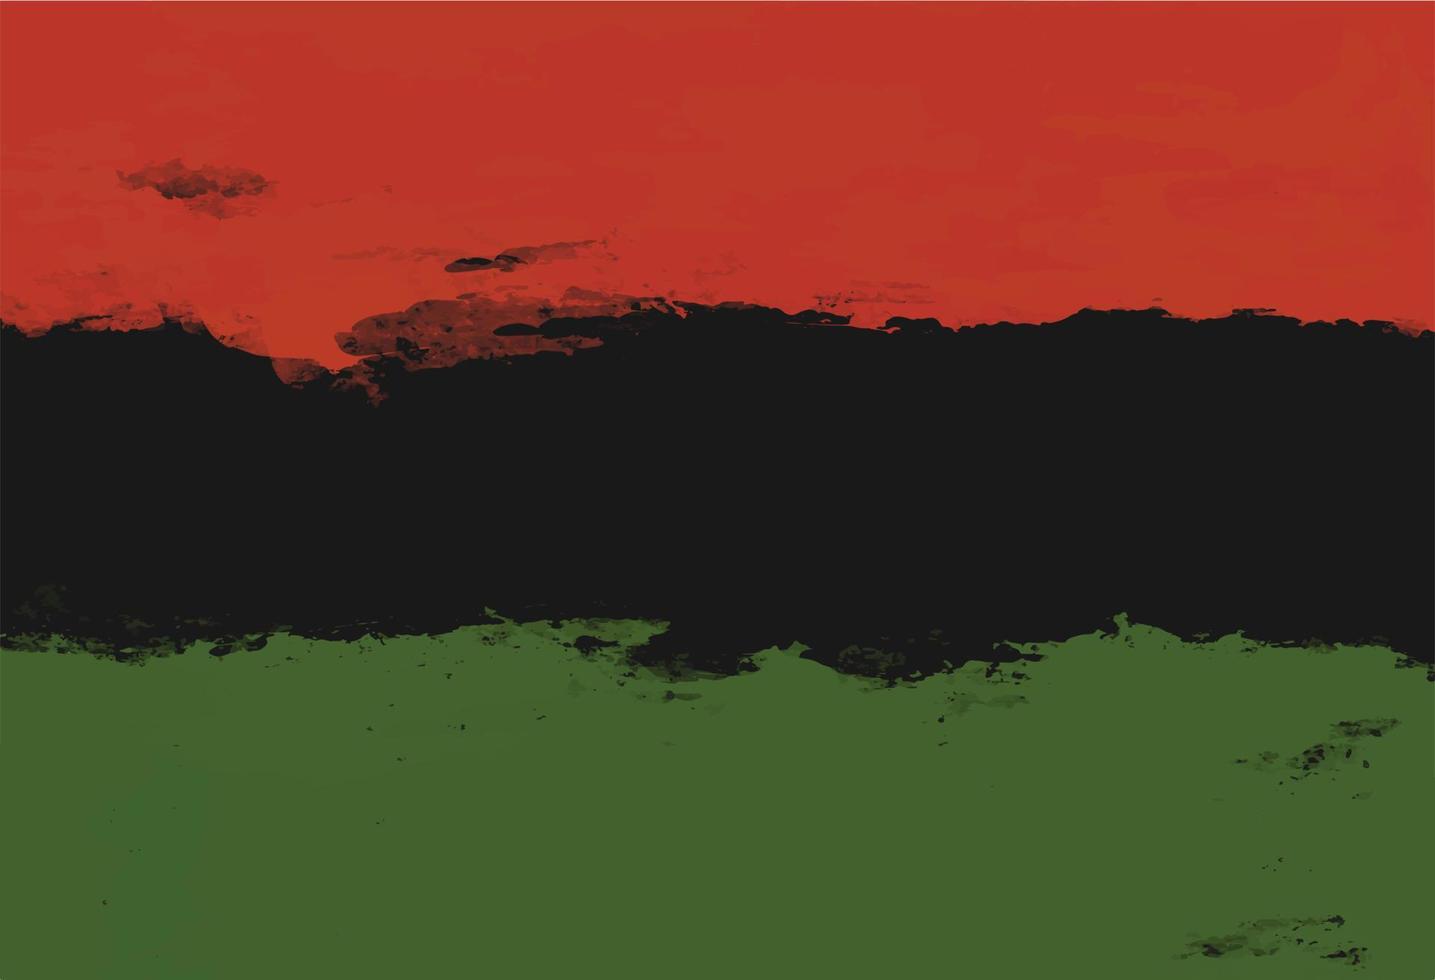 bandiera panafricana - bande orizzontali rosse, nere, verdi. disegnato a mano con pennello, bandiera afroamericana, bandiera di liberazione nera, grunge strutturato. disegno di sfondo per il diciannovesimo, mese della storia nera. vettore